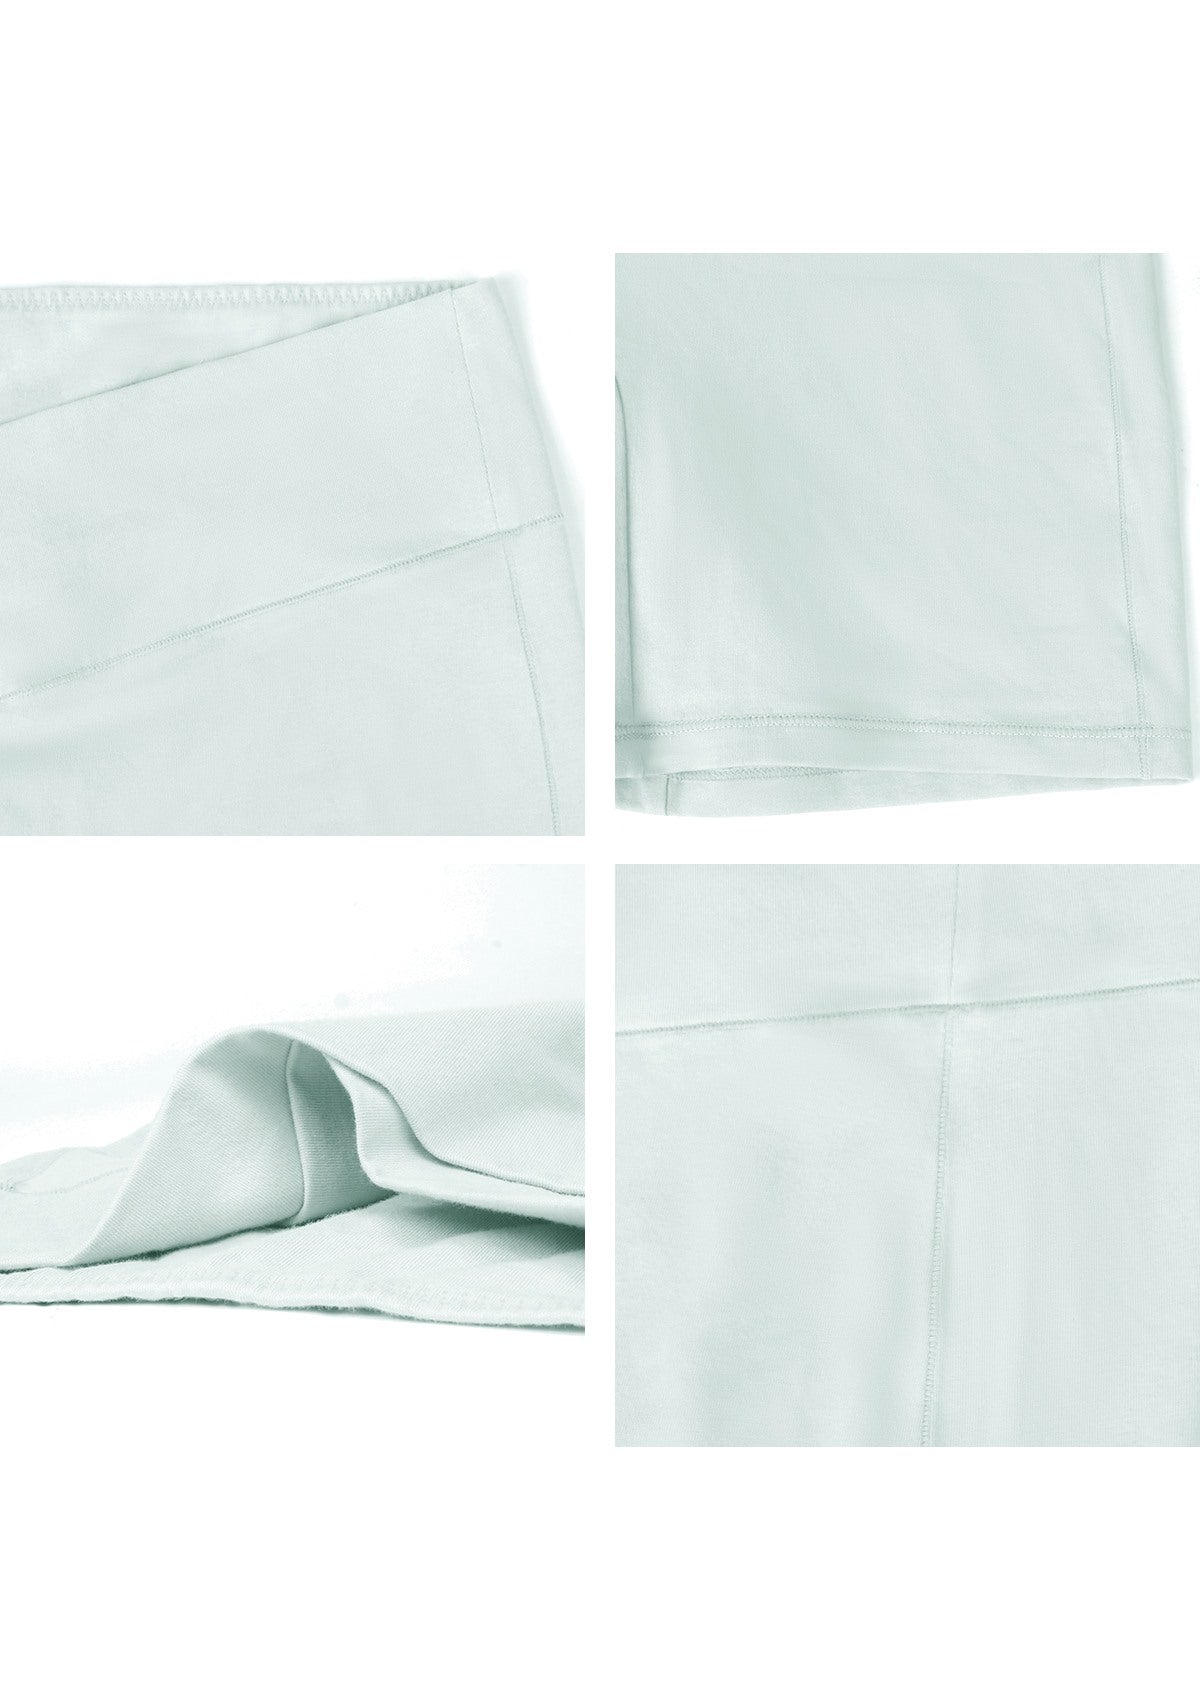 All-Day Comfort High-Rise Cotton Boyshorts Underwear 3 Pack - XL / Black+White+Beige